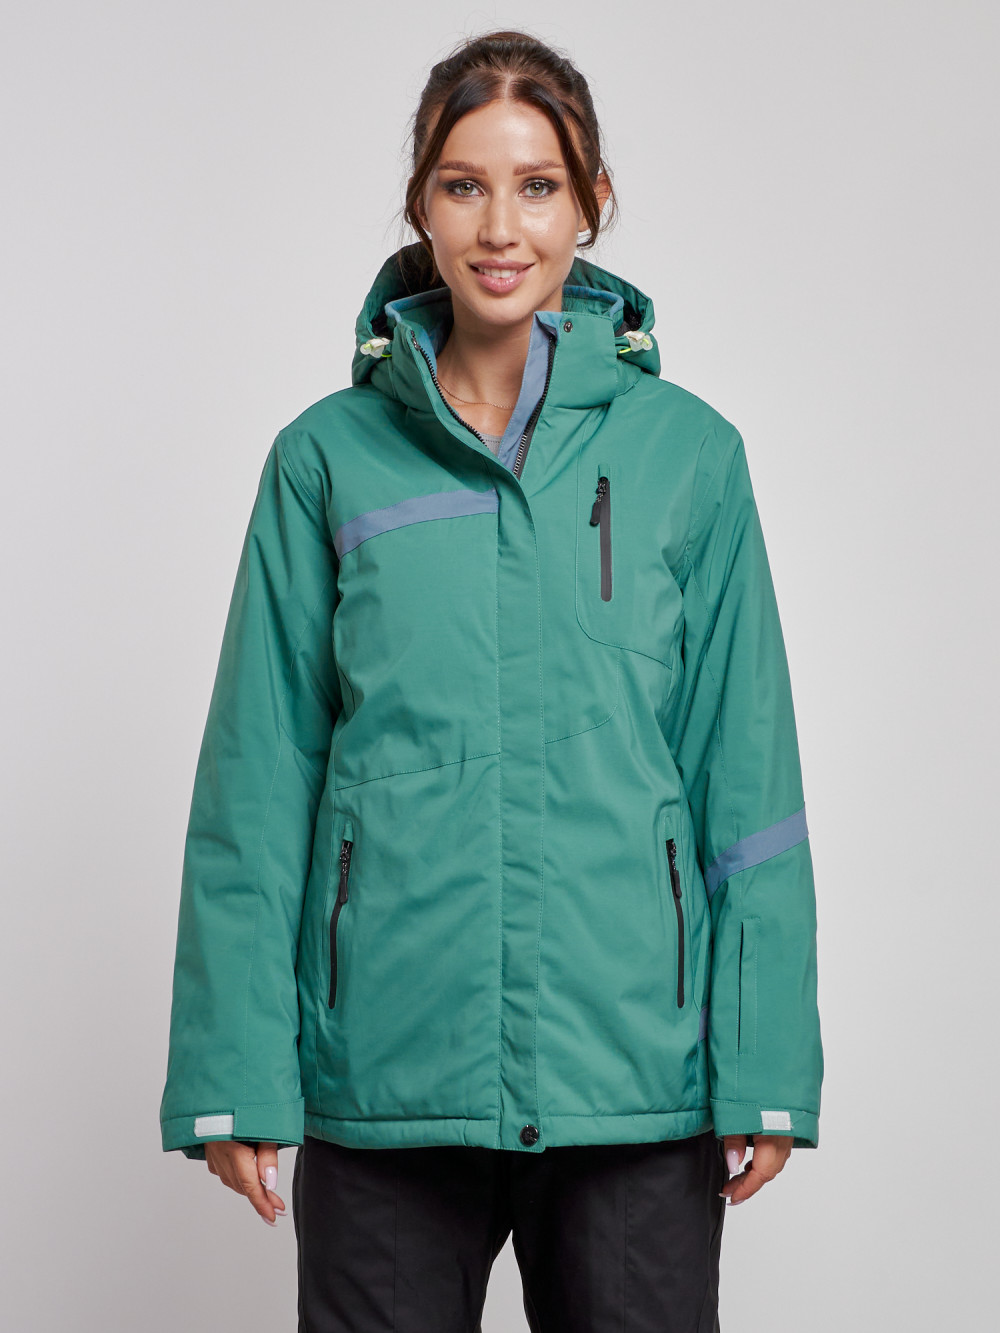 Купить оптом Горнолыжная куртка женская зимняя большого размера зеленого цвета 3382Z в Екатеринбурге